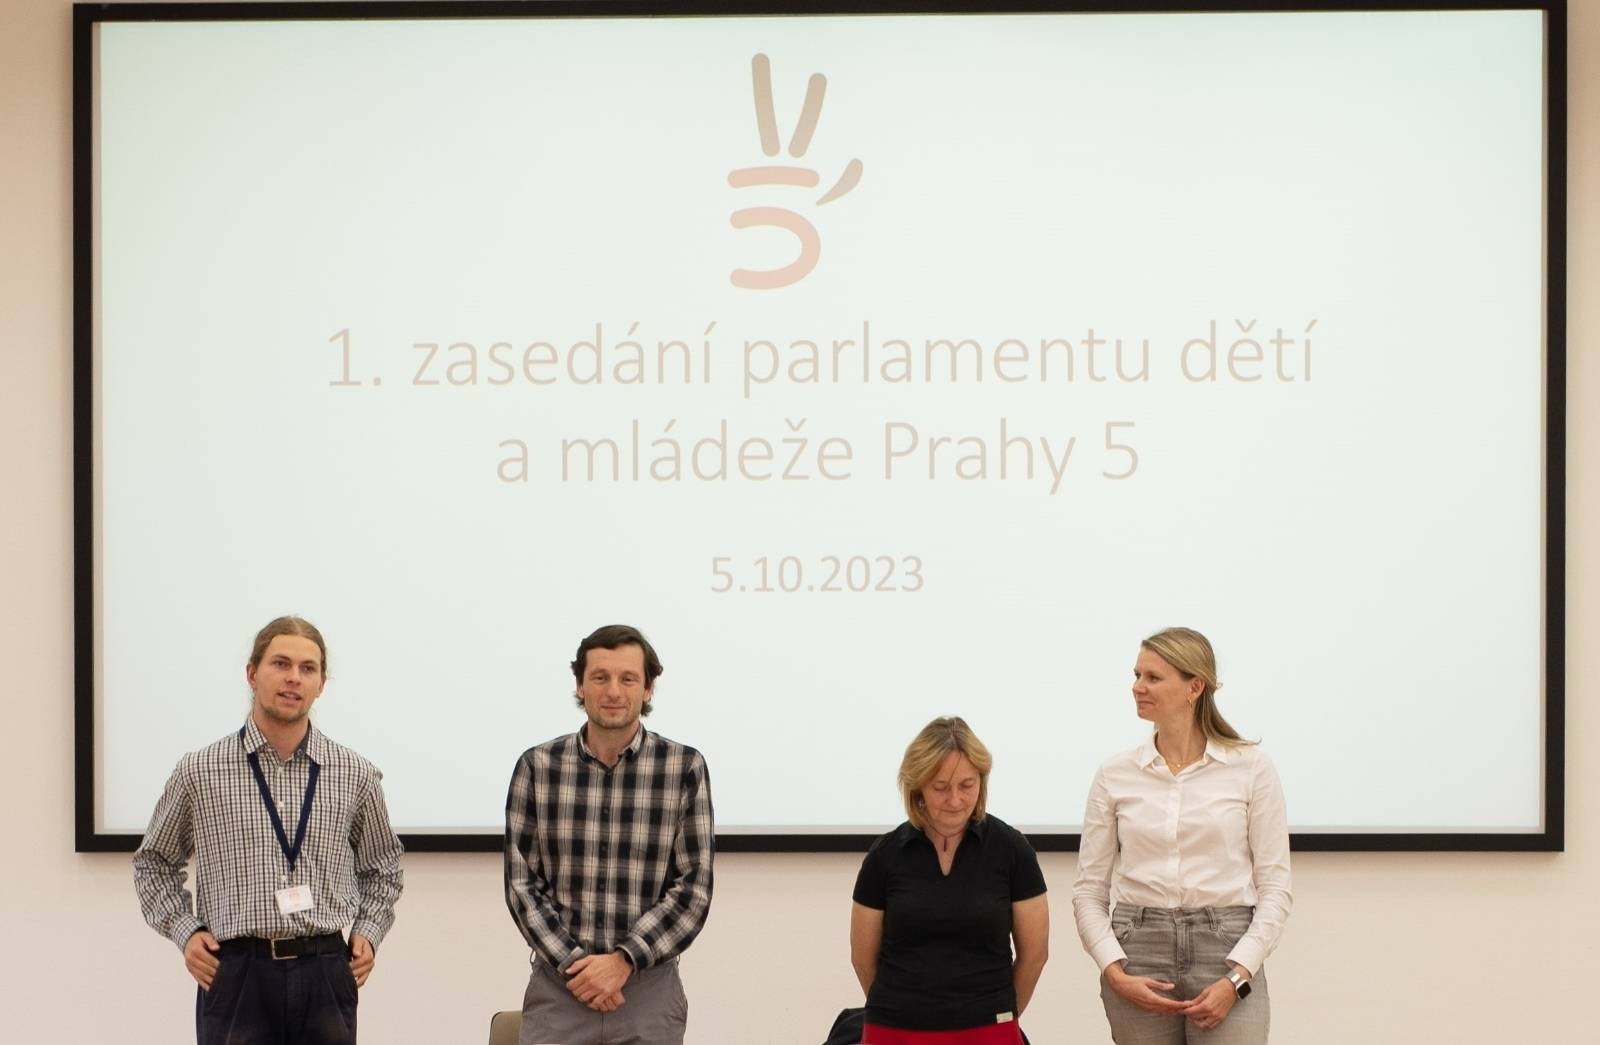 Parlament dětí a mládeže Prahy 5 zahájil svou činnost